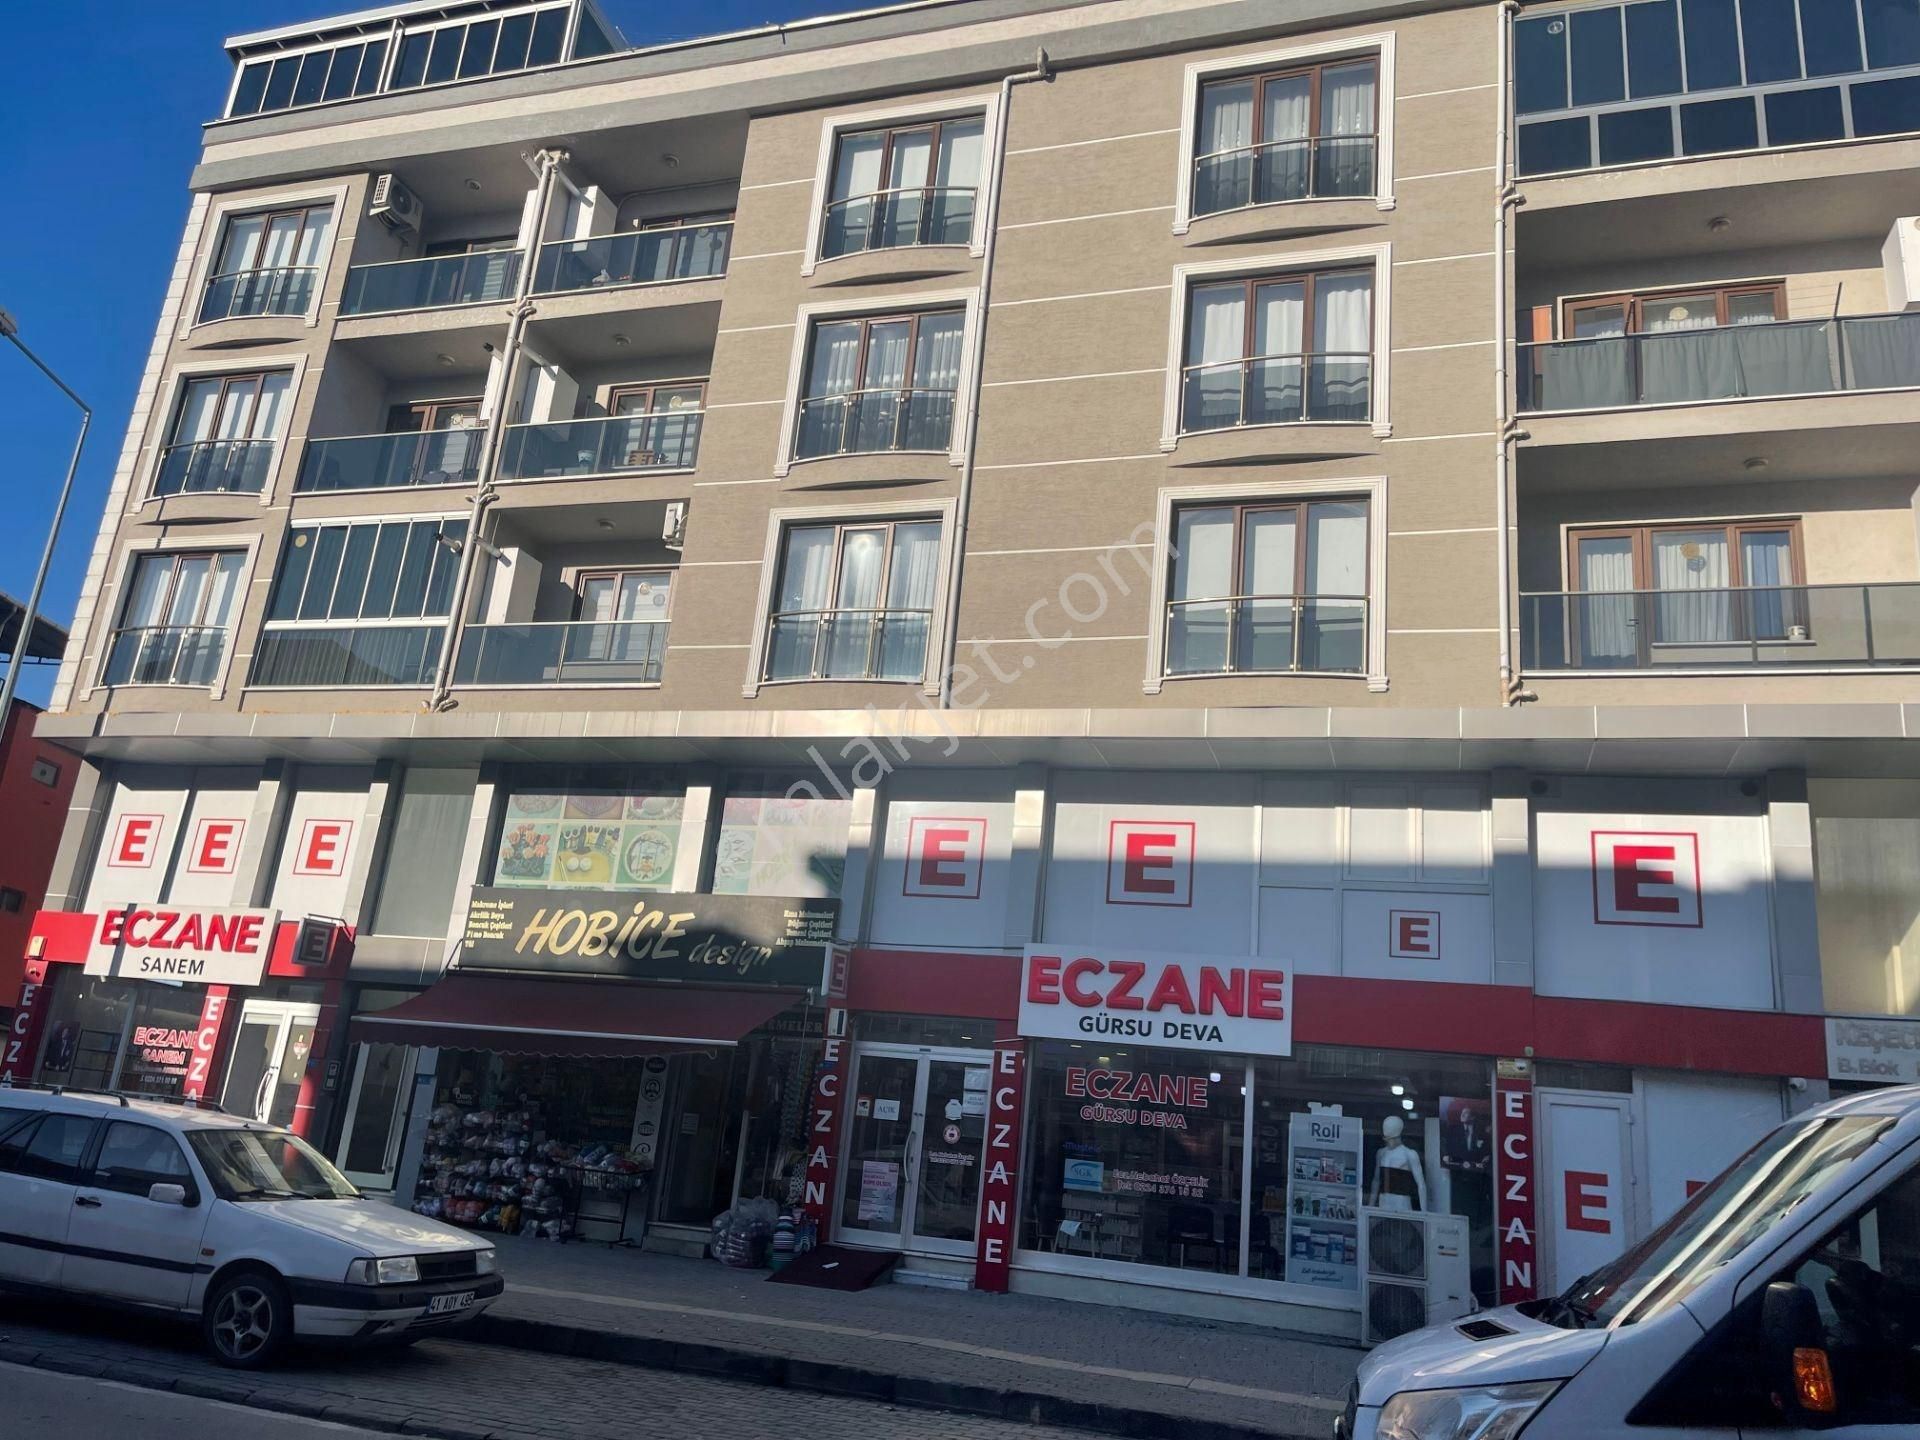 Gürsu Zafer Satılık Dükkan & Mağaza BURSA GÜRSU ZAFER MAHALLESİ'NDE SATILIK DÜKKAN